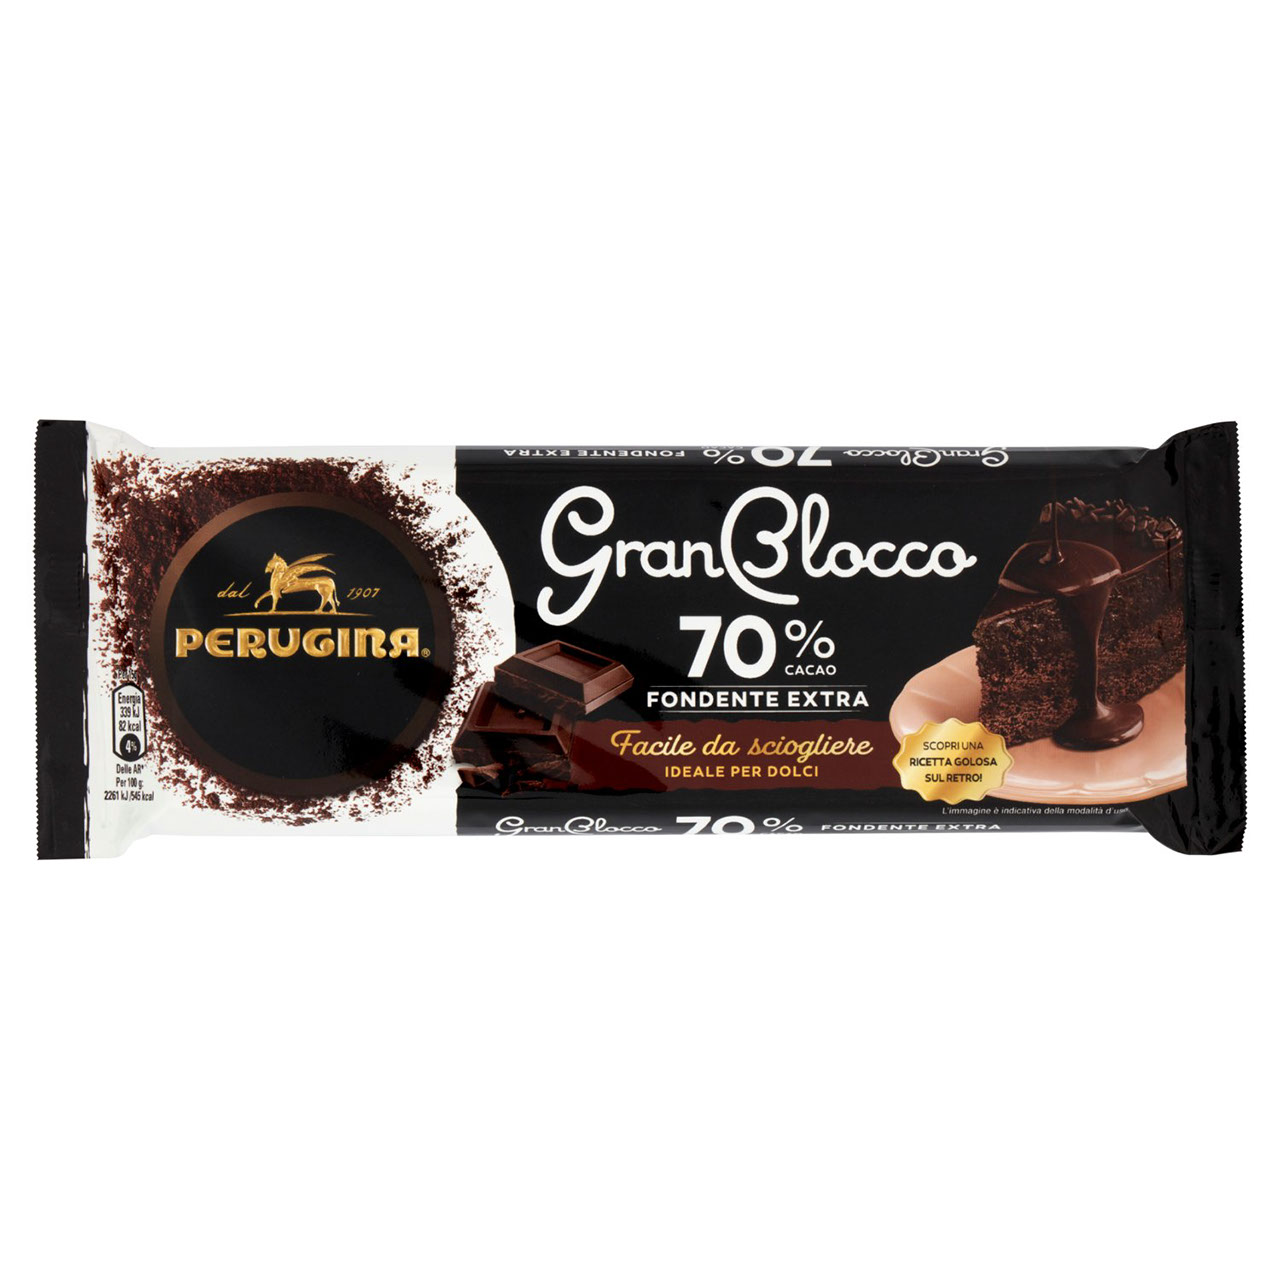 Cioccolato Perugina GranBlocco in vendita online